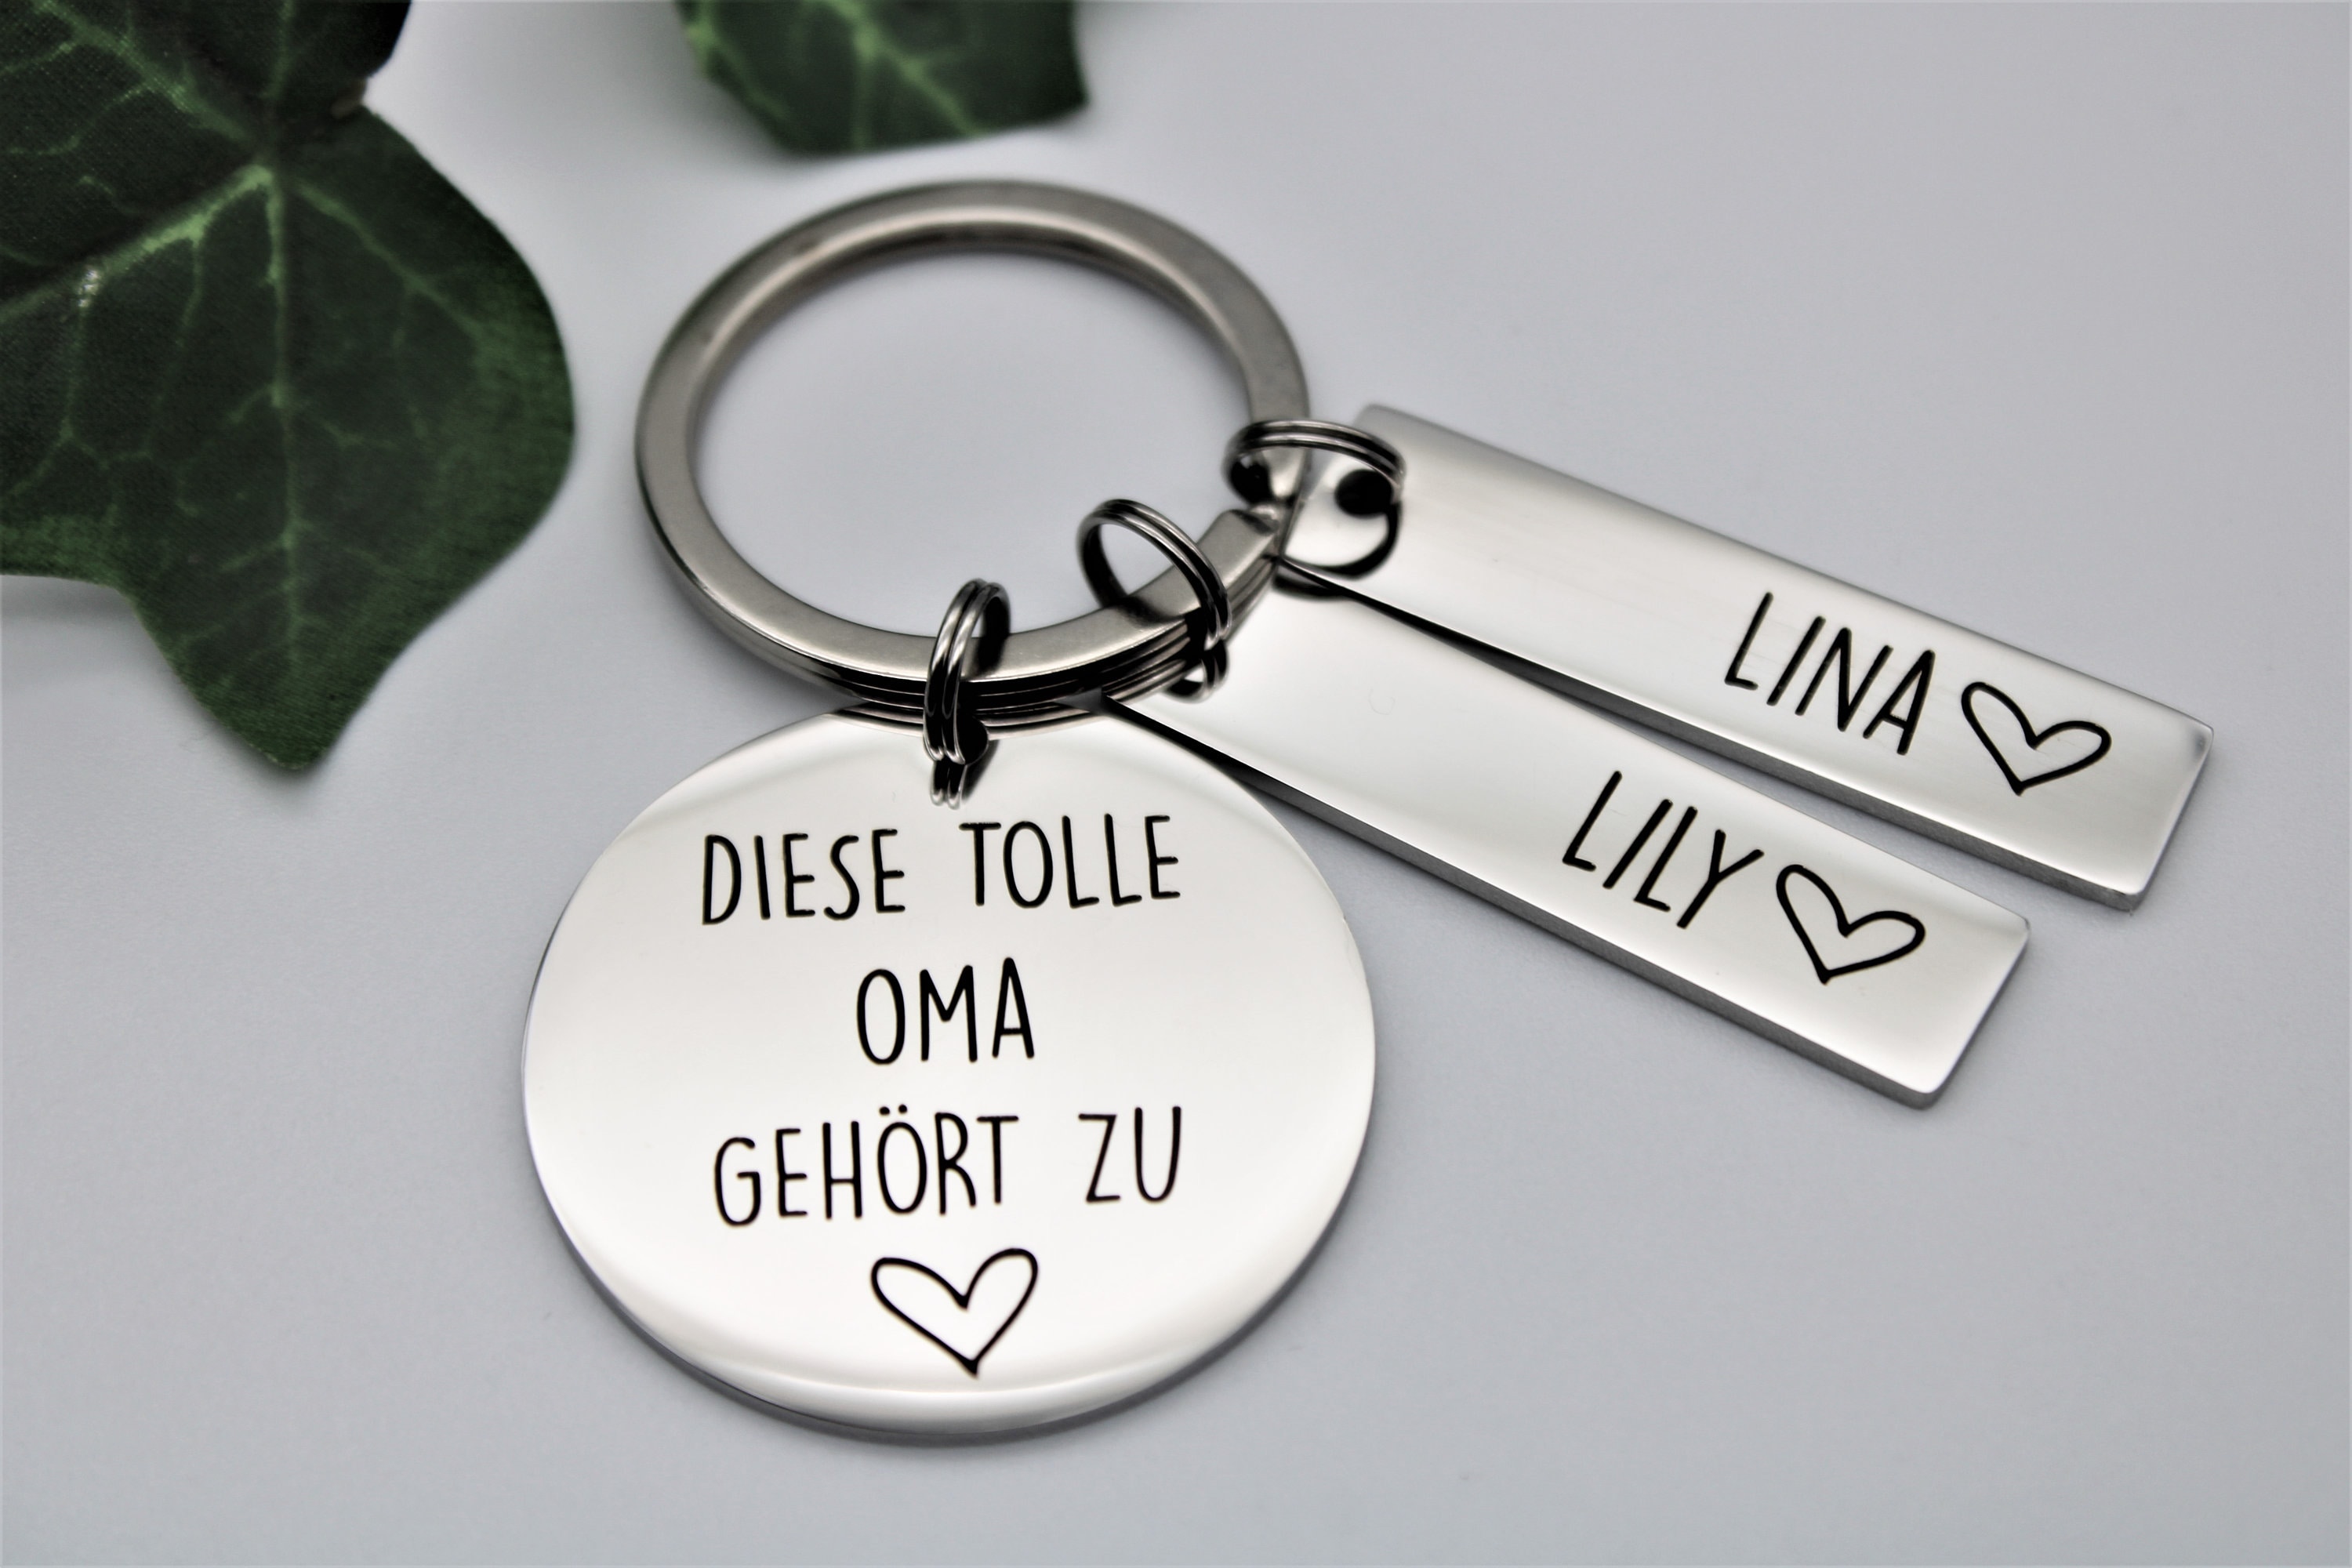 Herzen Personalisierte Schlüsselanhänger-Mama & Oma 2-11 Namen